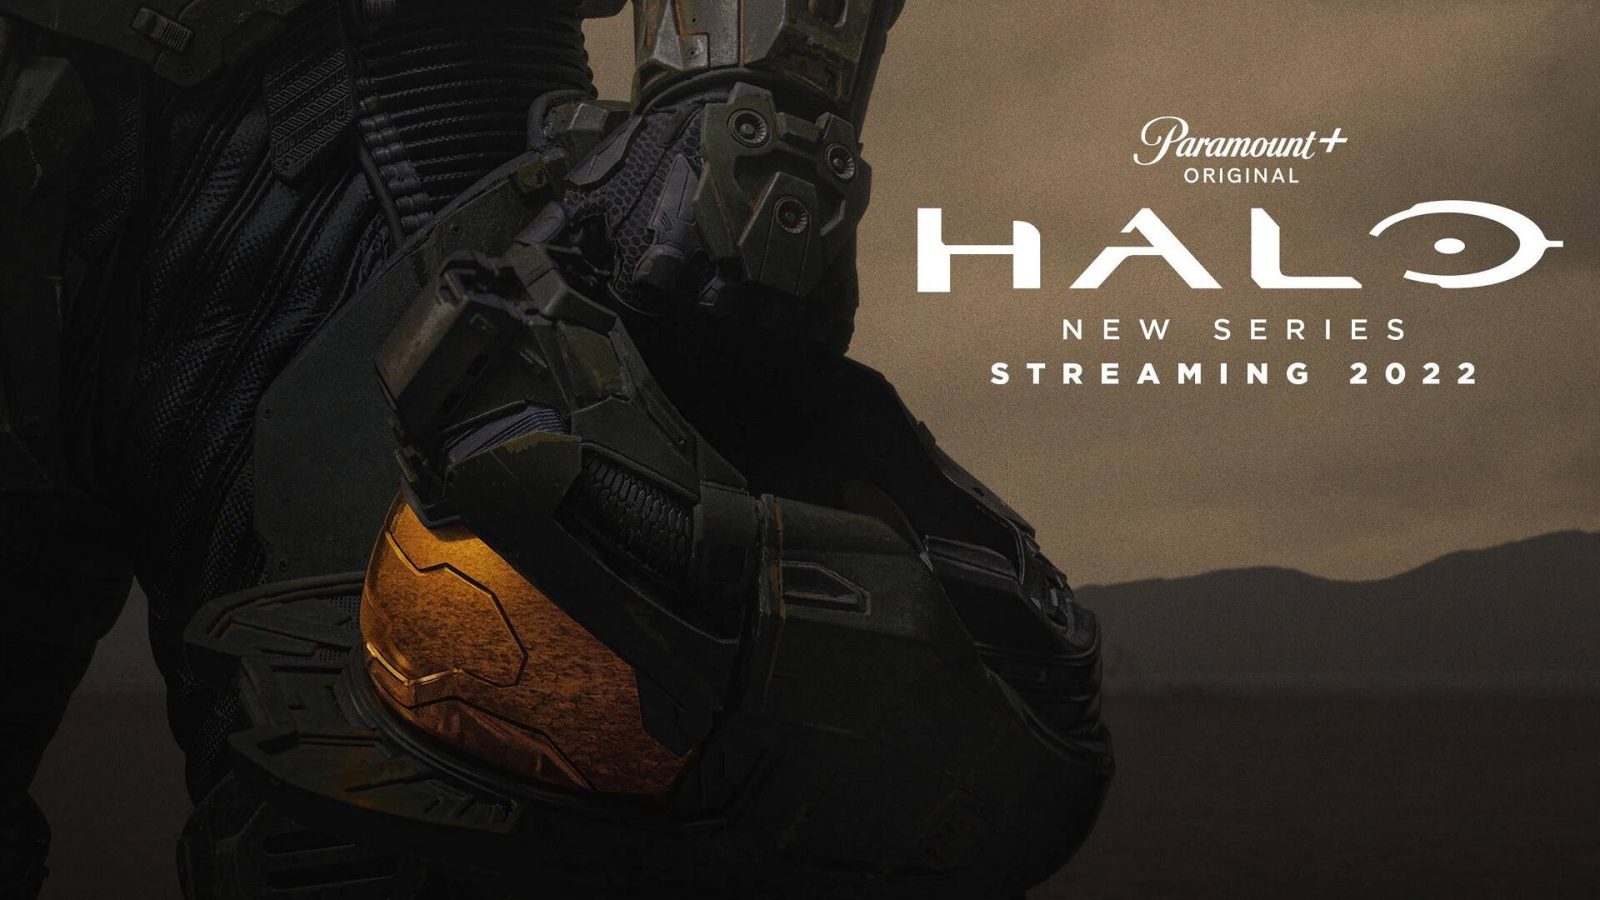 Halo Master Chief nuovo trailer in arrivo